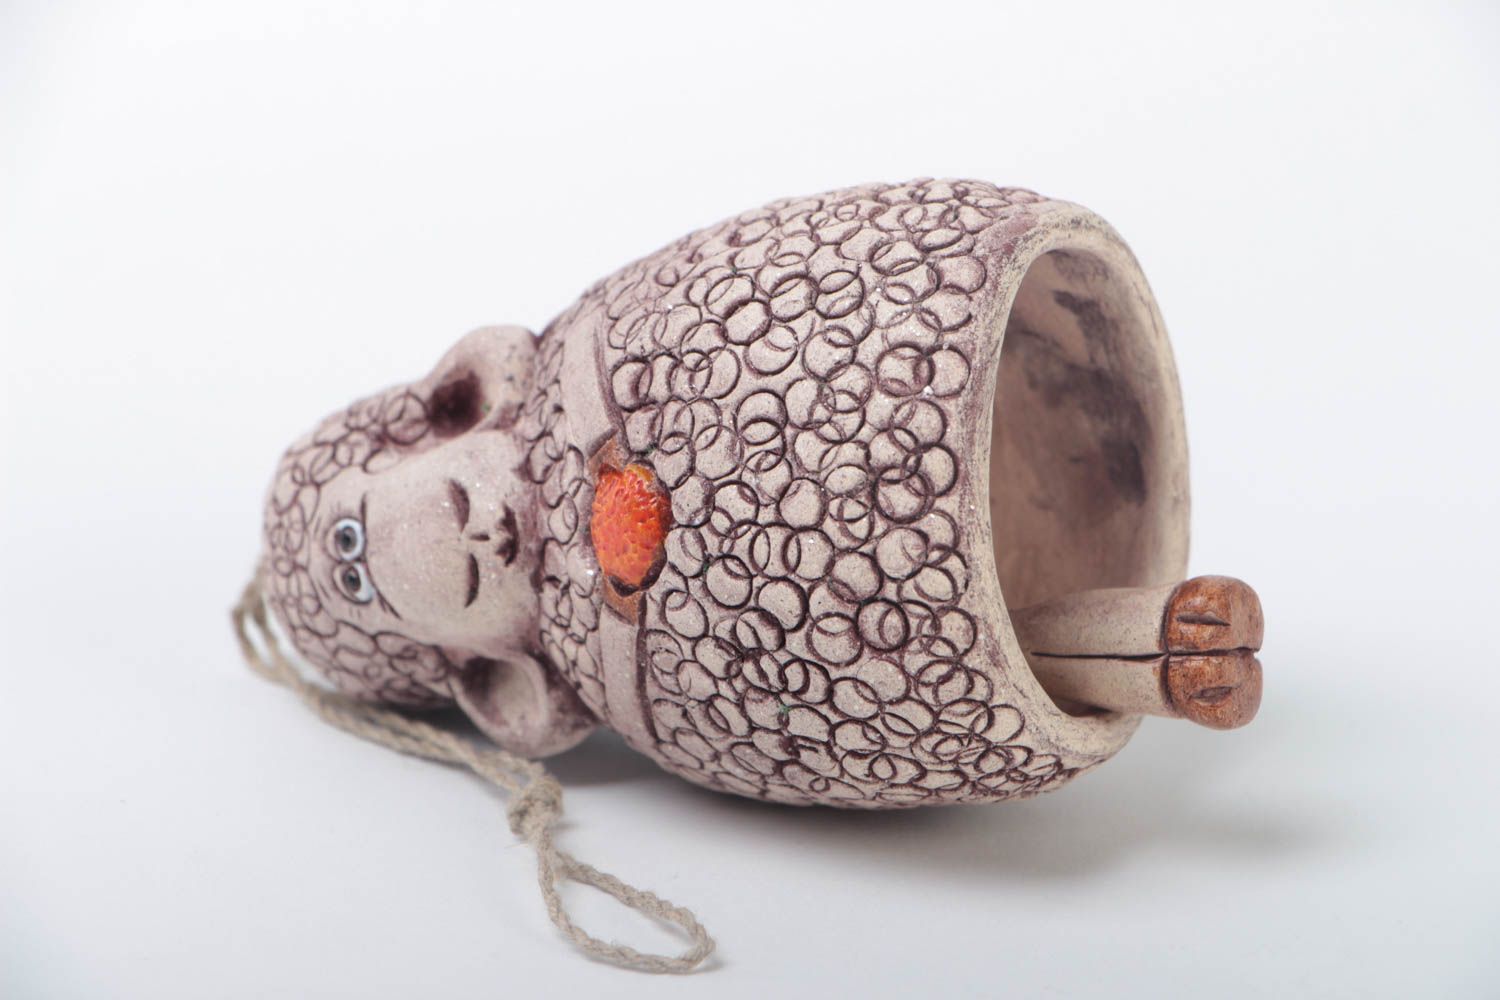 Handmade Deko Glöckchen aus Ton in Form von Schaf klein schön für Haus Dekor foto 4